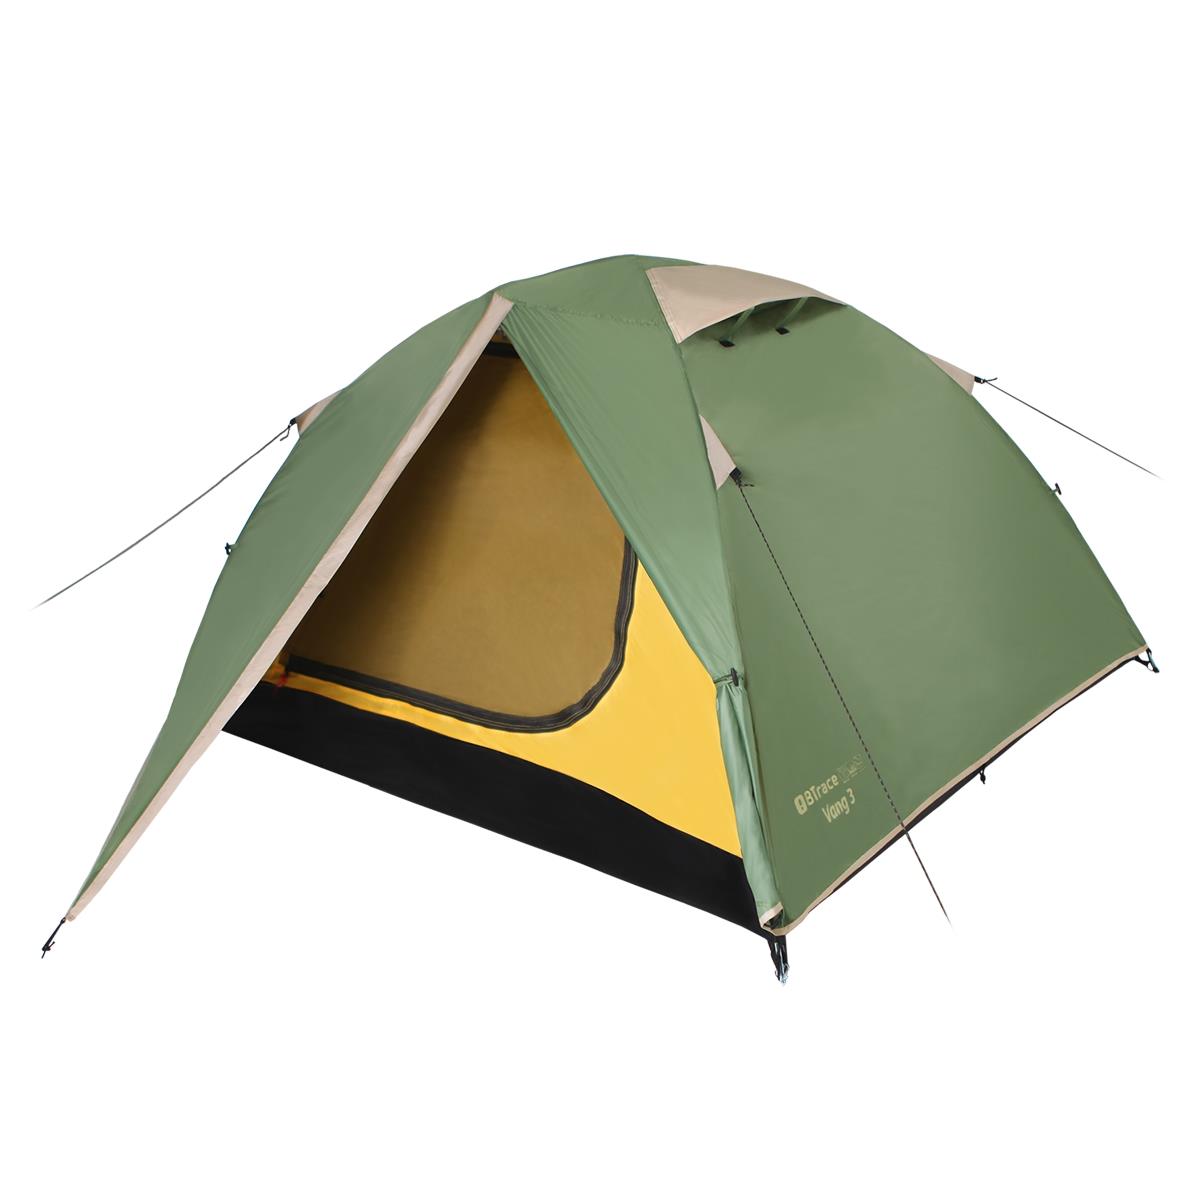 Палатка Vang 3 Зеленый/Бежевый (T0480) BTrace колышки для палатки coghlan s